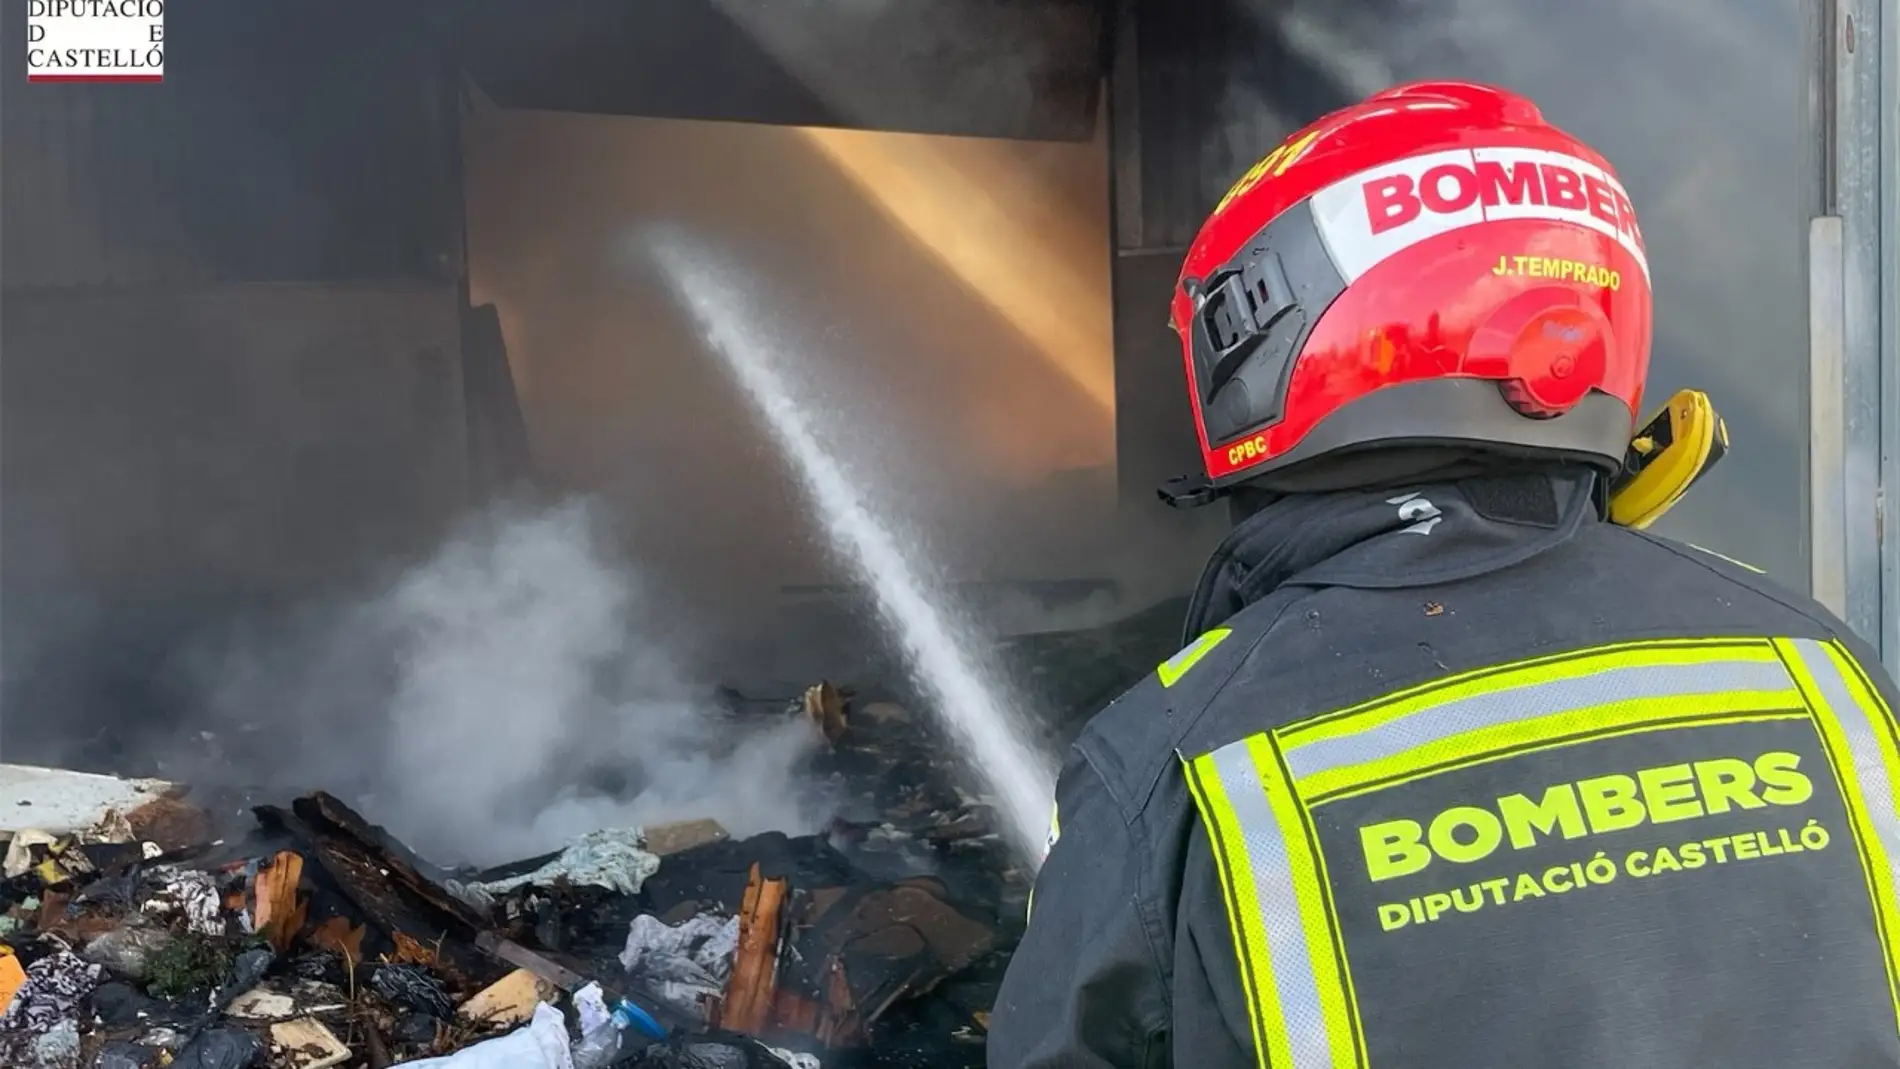 Los bomberos trabajan en la extinción de un incendio en una nave abandonada en Oropesa